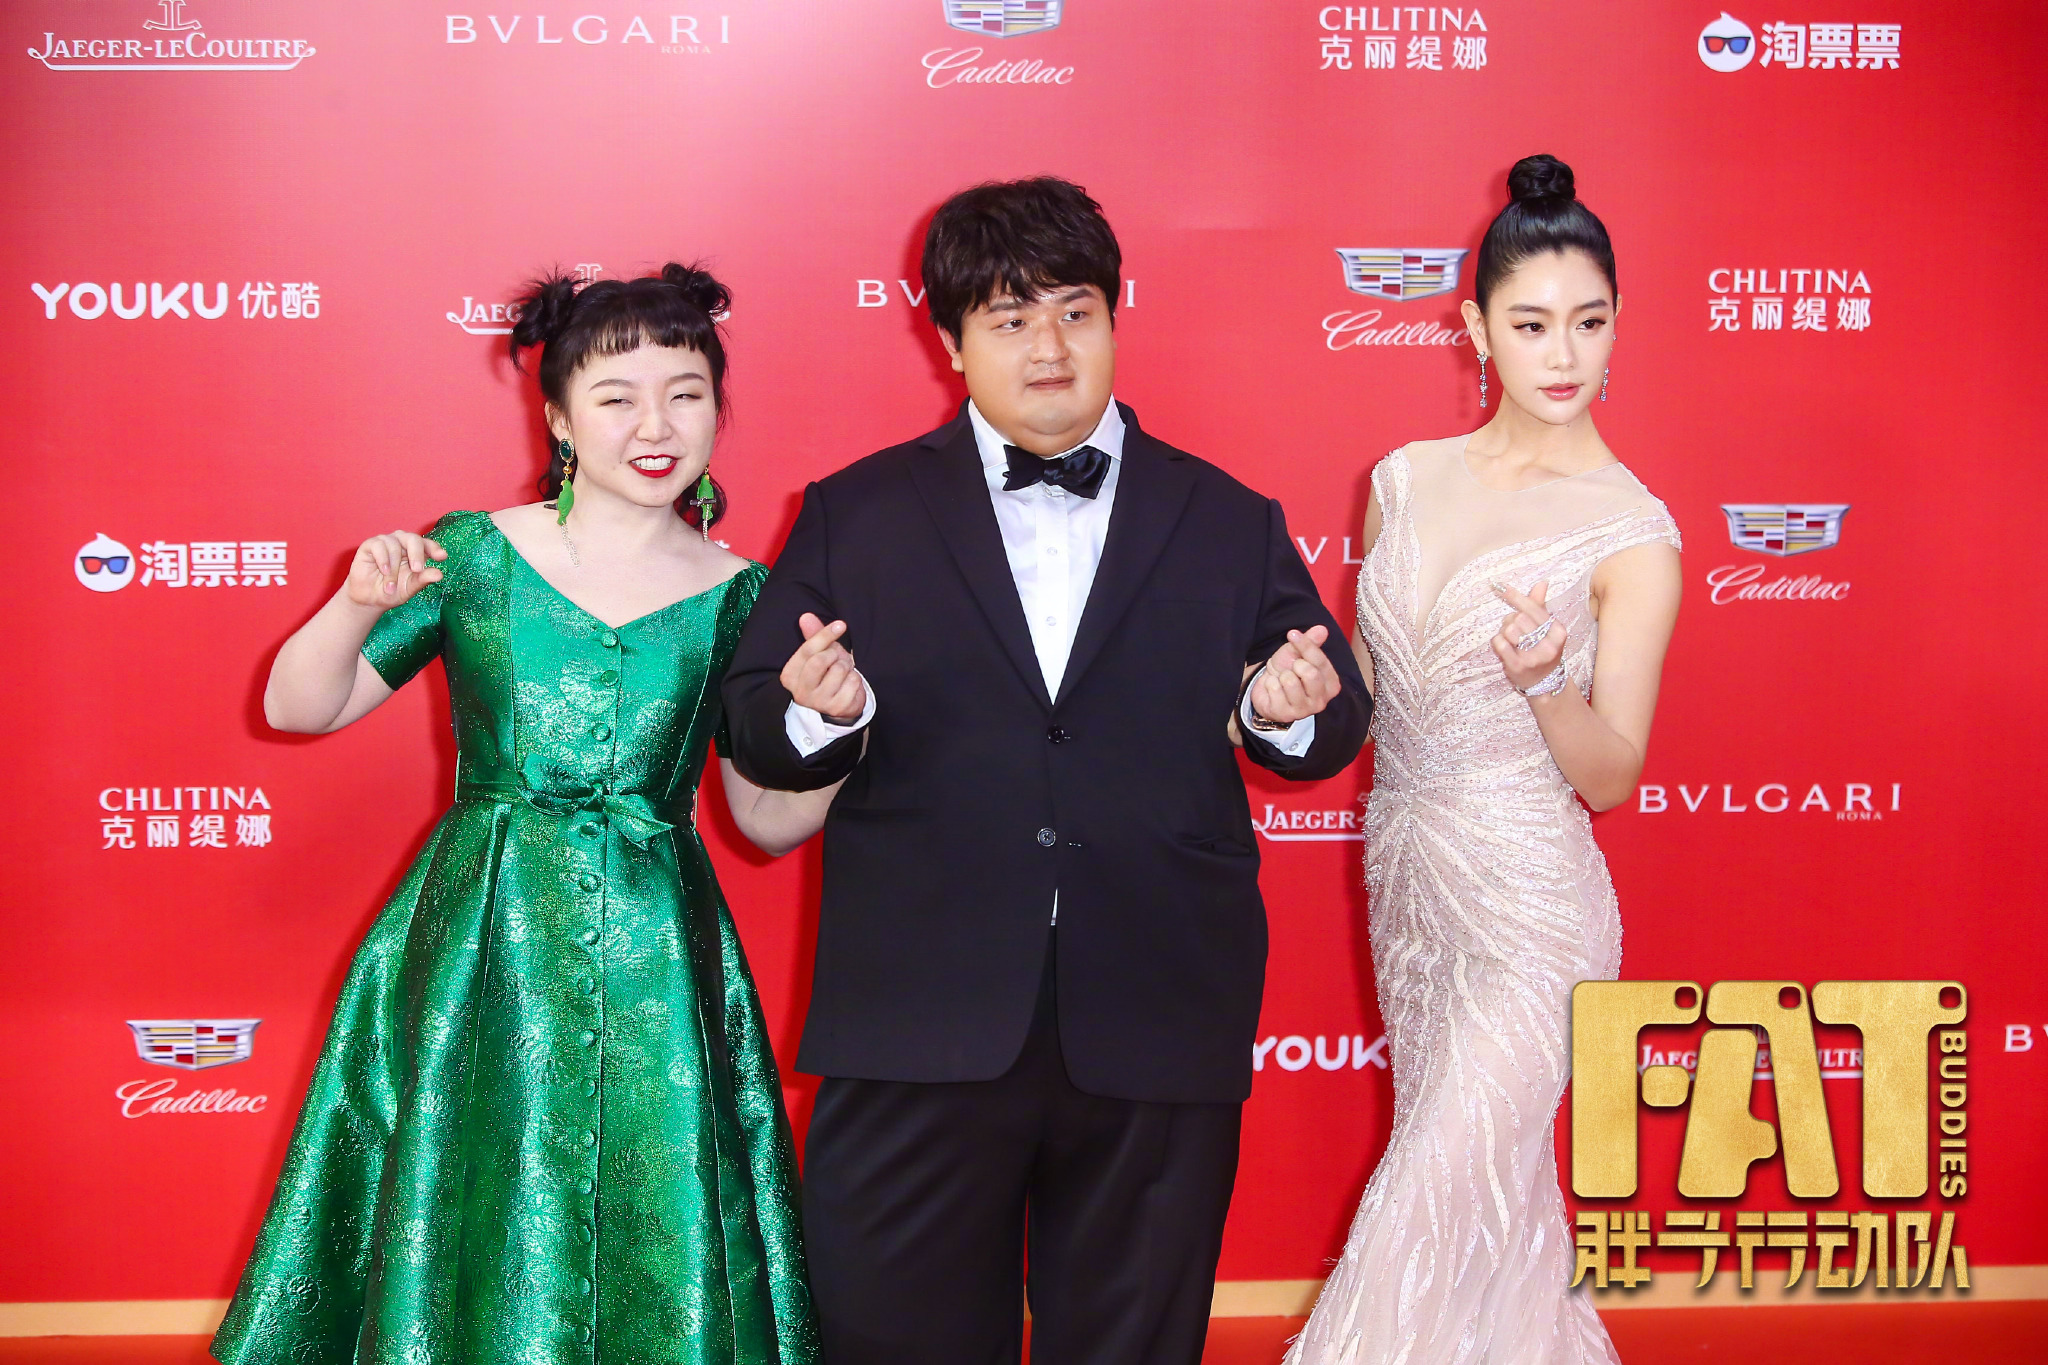 上海电影节# @包贝尔 首次执导的电影#胖子行动队# 剧组:优雅知性的